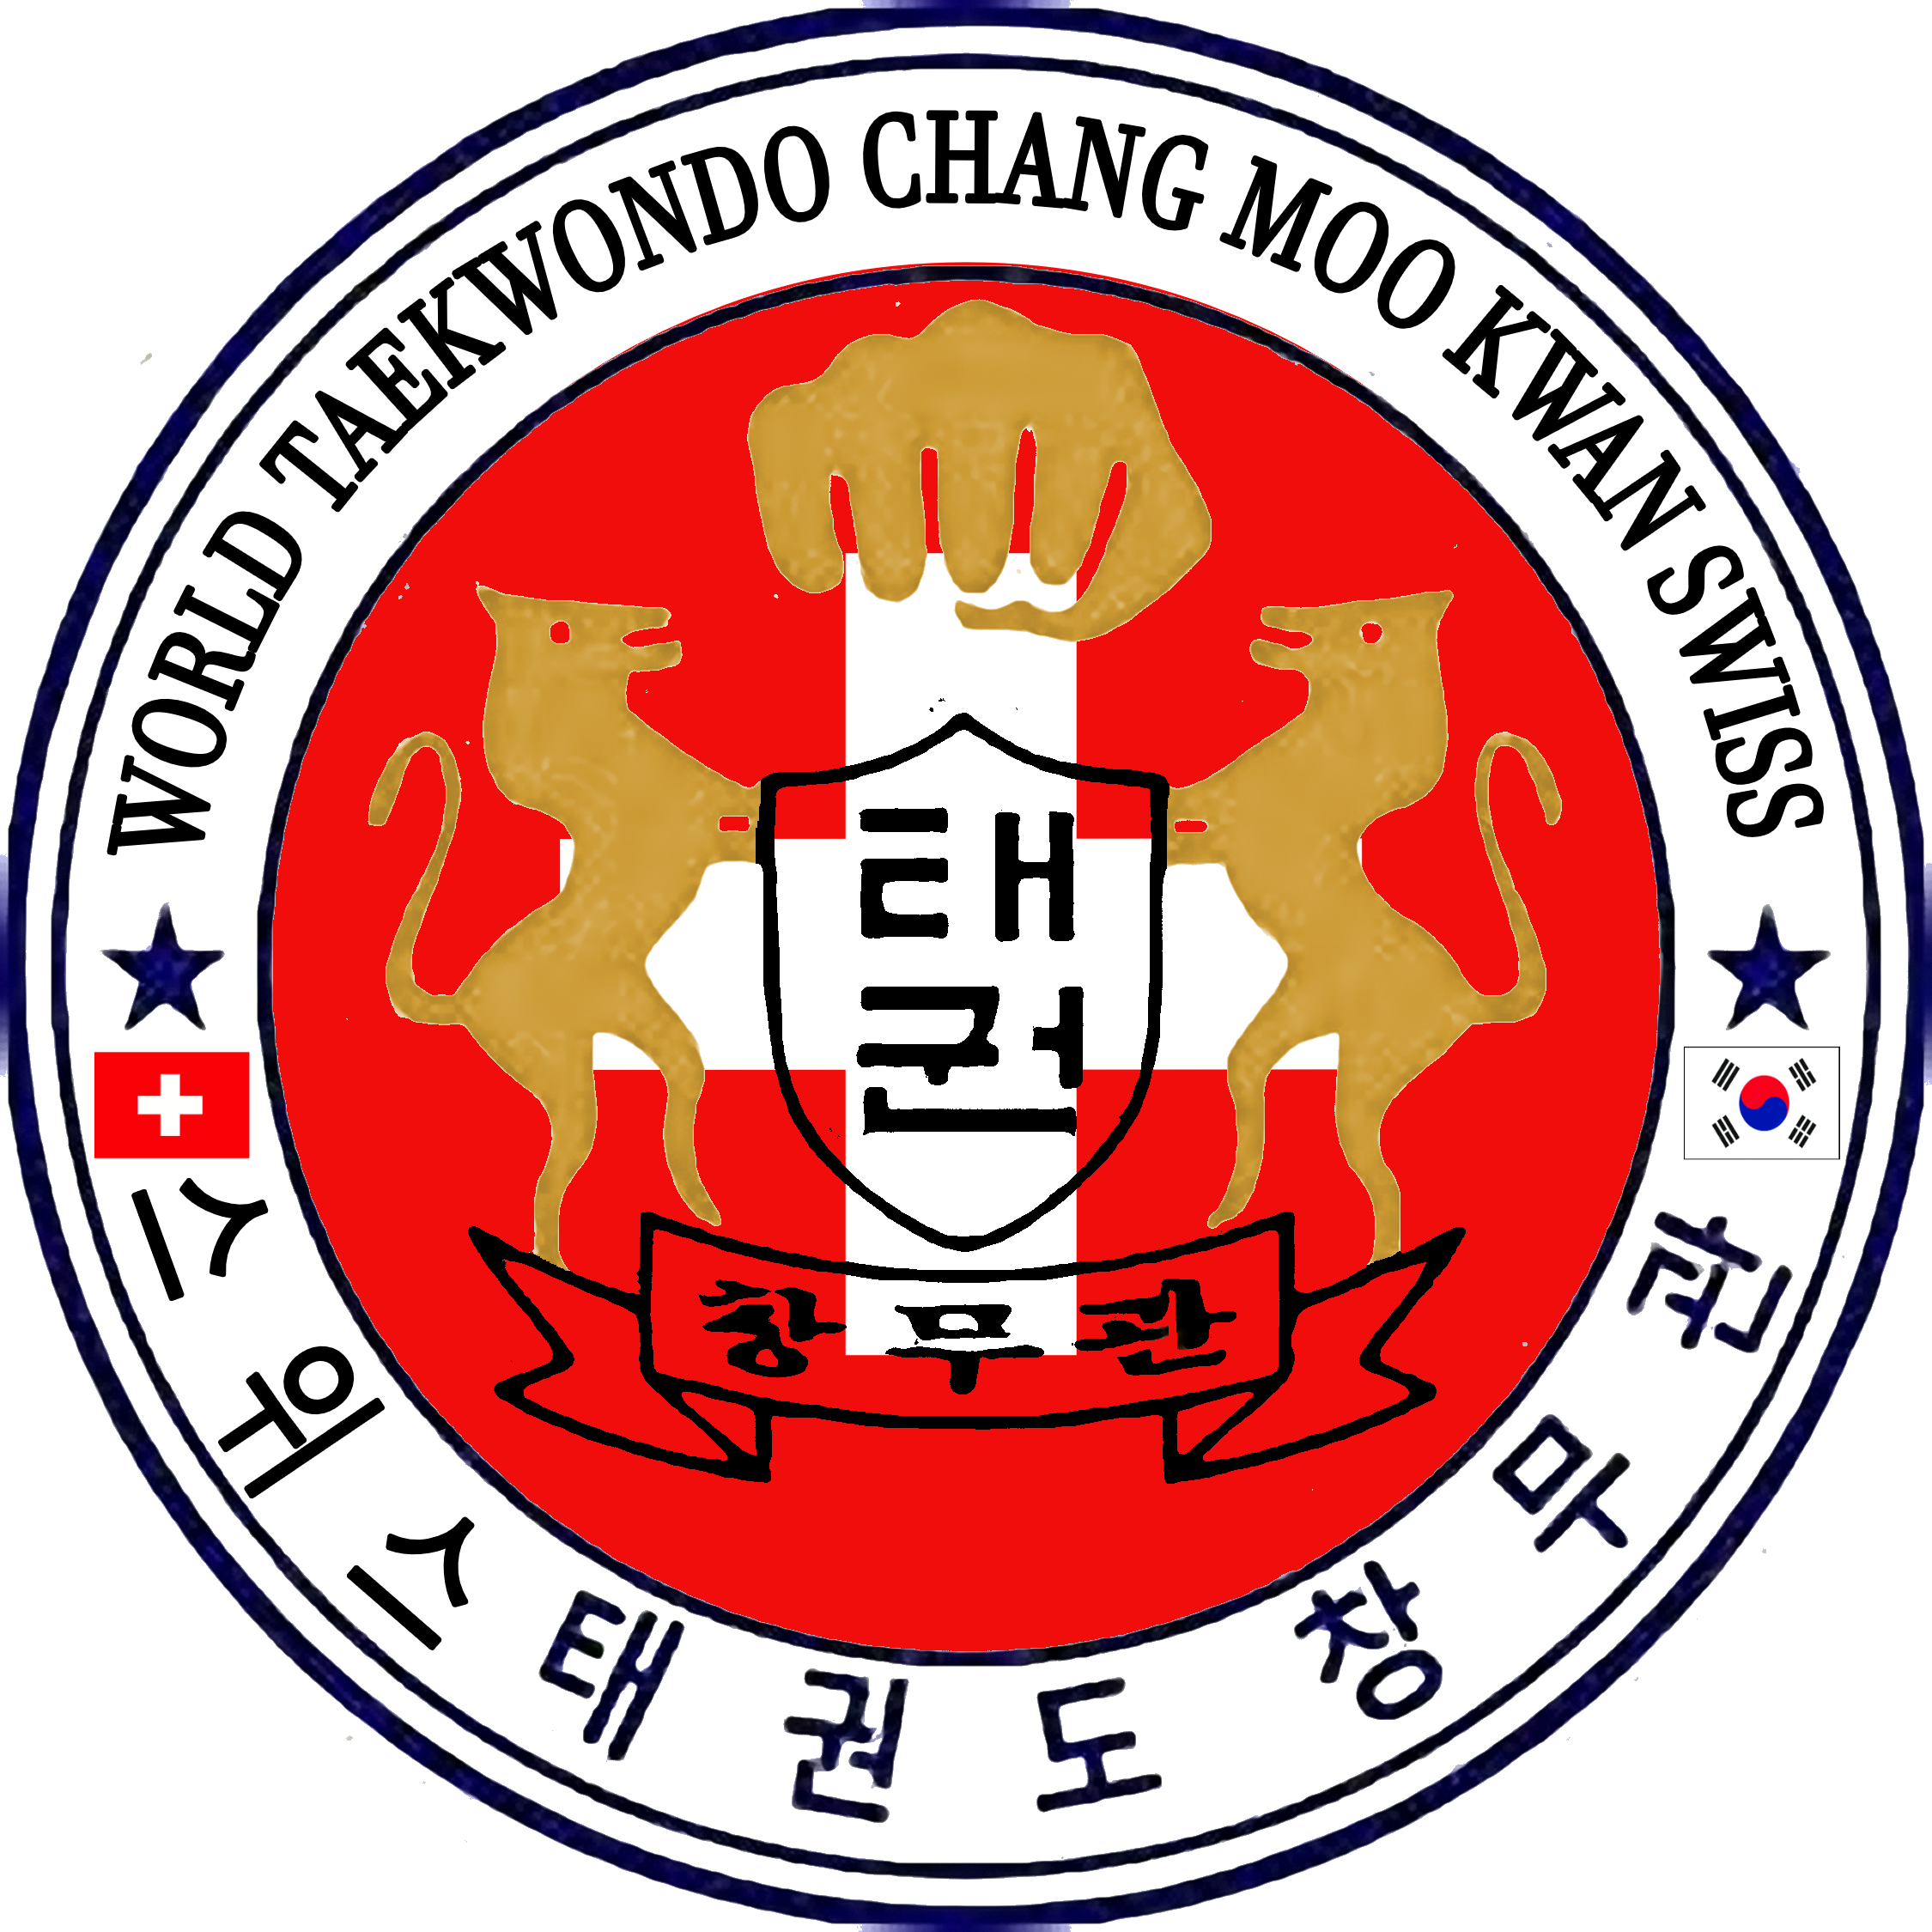 World Taekwondo Chang Moo Kwan 01